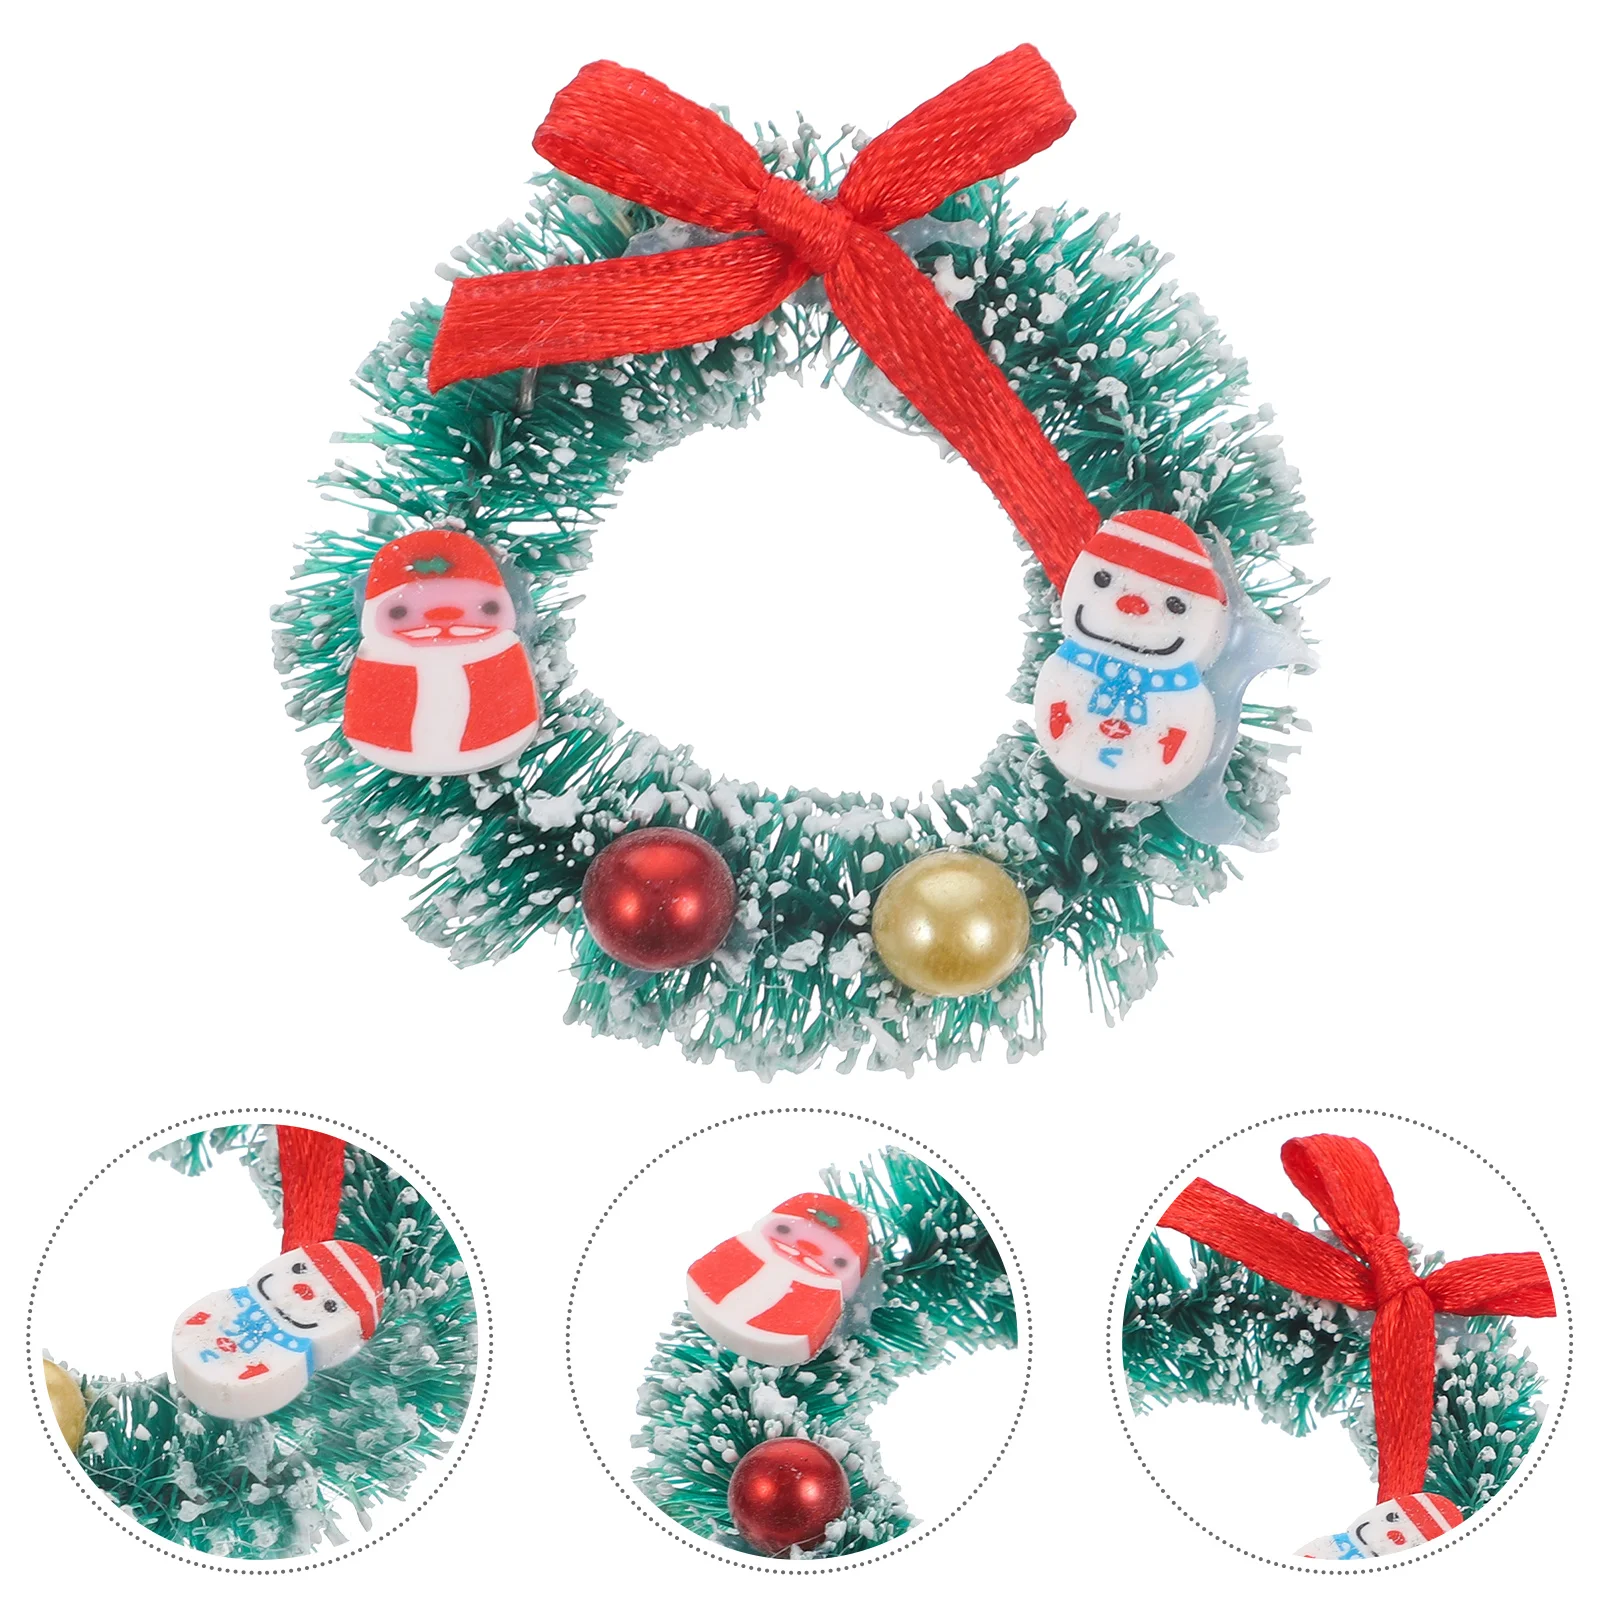 

10 Pcs Ornaments Christmas Party Favors Decor Resin Crafts Miniature Wreath Figurine Xmas Elder Micro Landscape Decoration